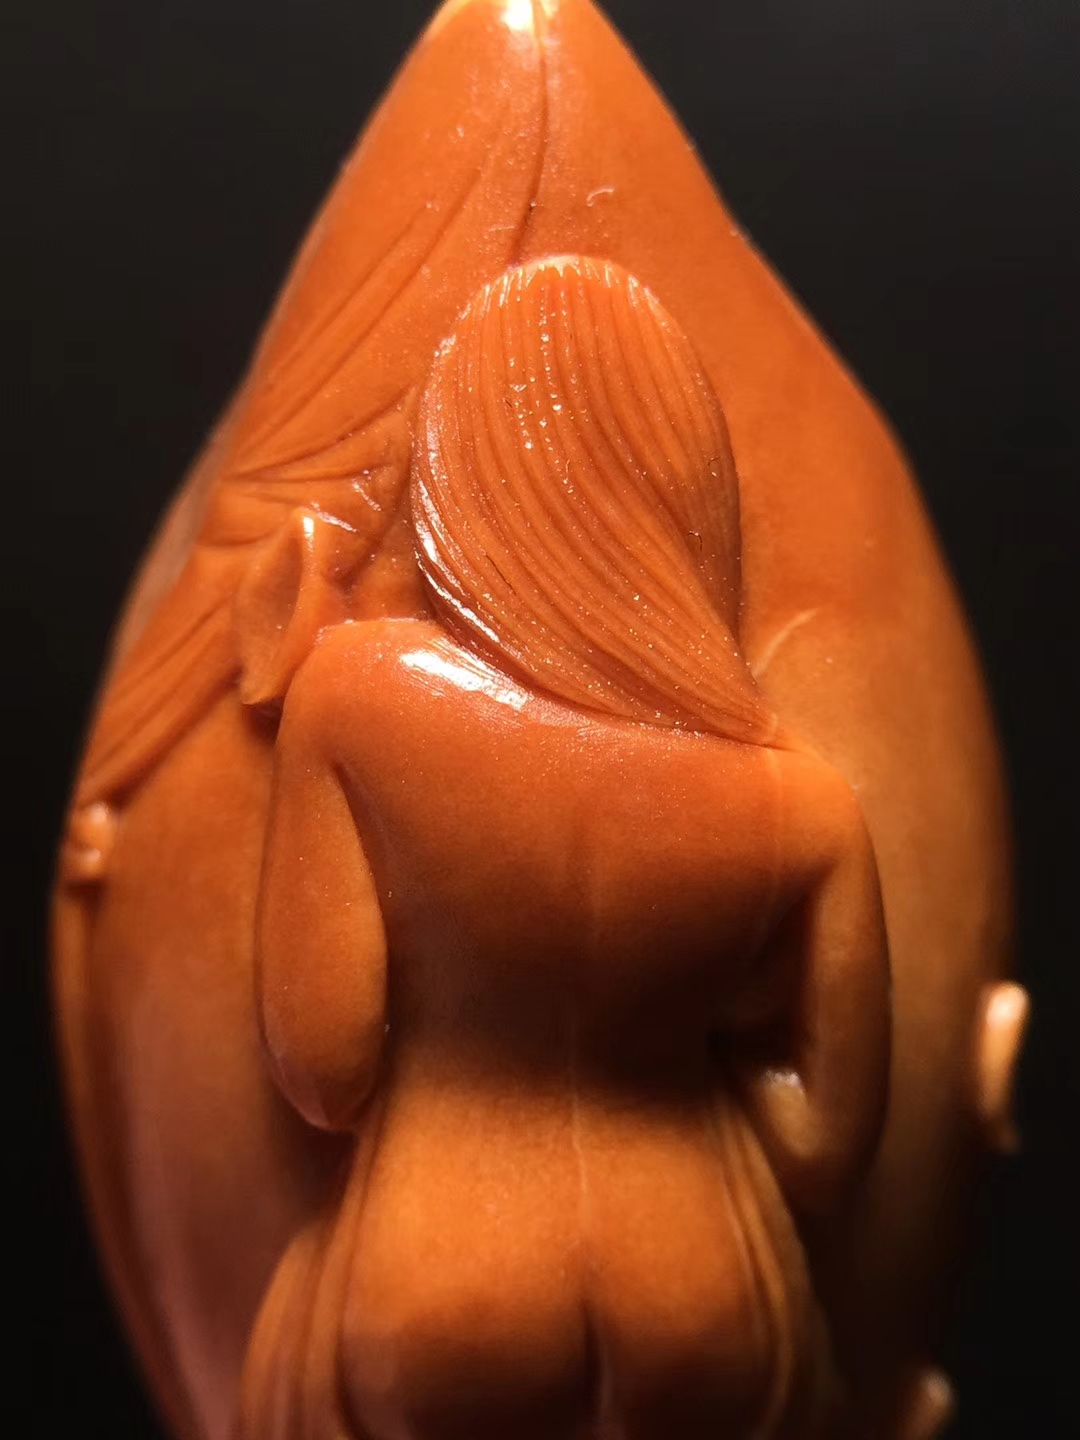 文玩欣赏:一颗橄榄核雕刻而成的美女出浴图居然这么美!